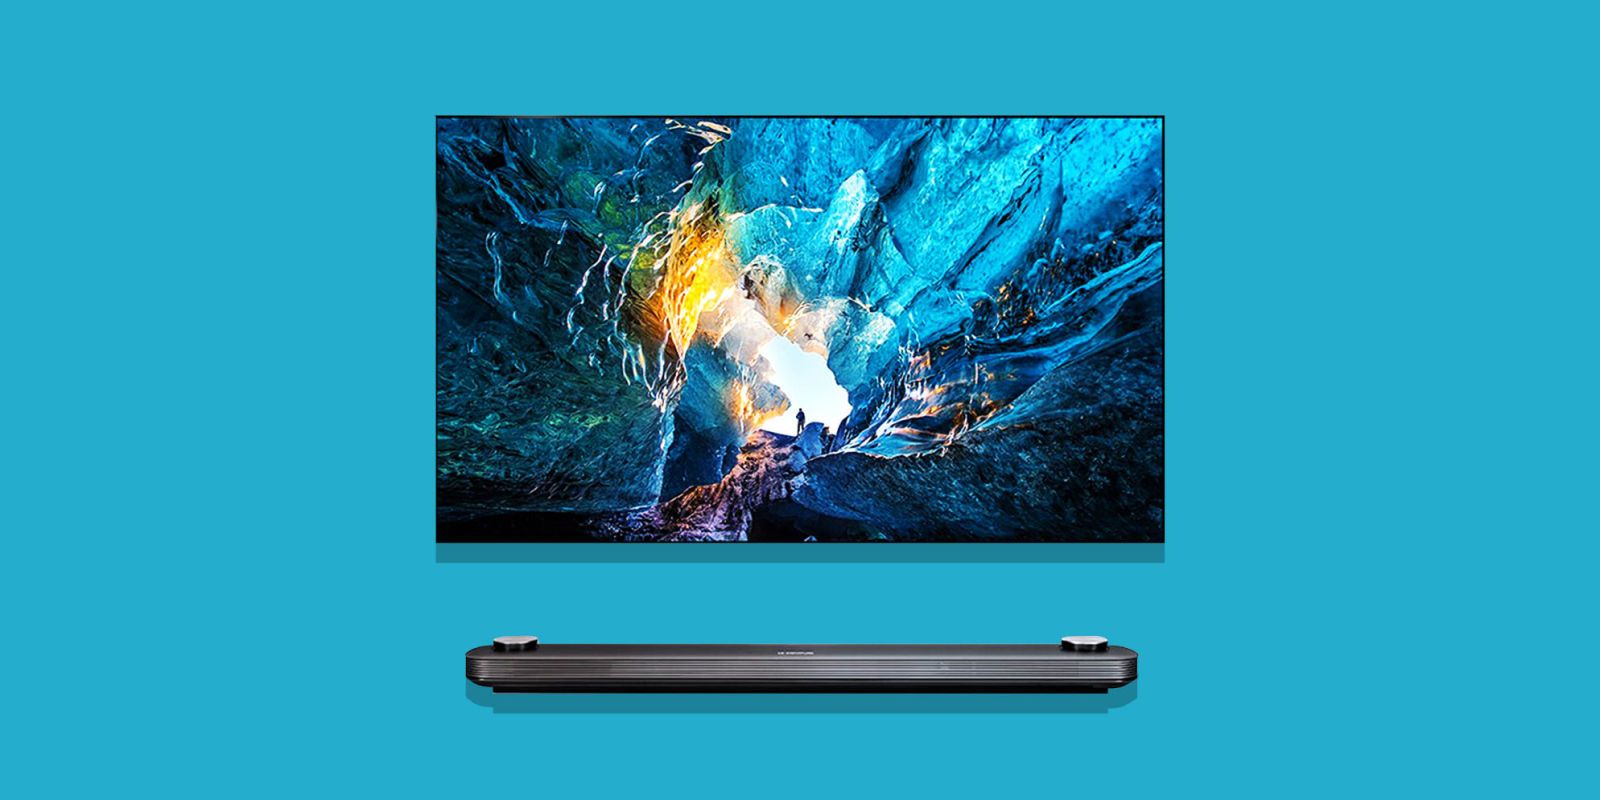 LG's Wallpaper OLED TVs